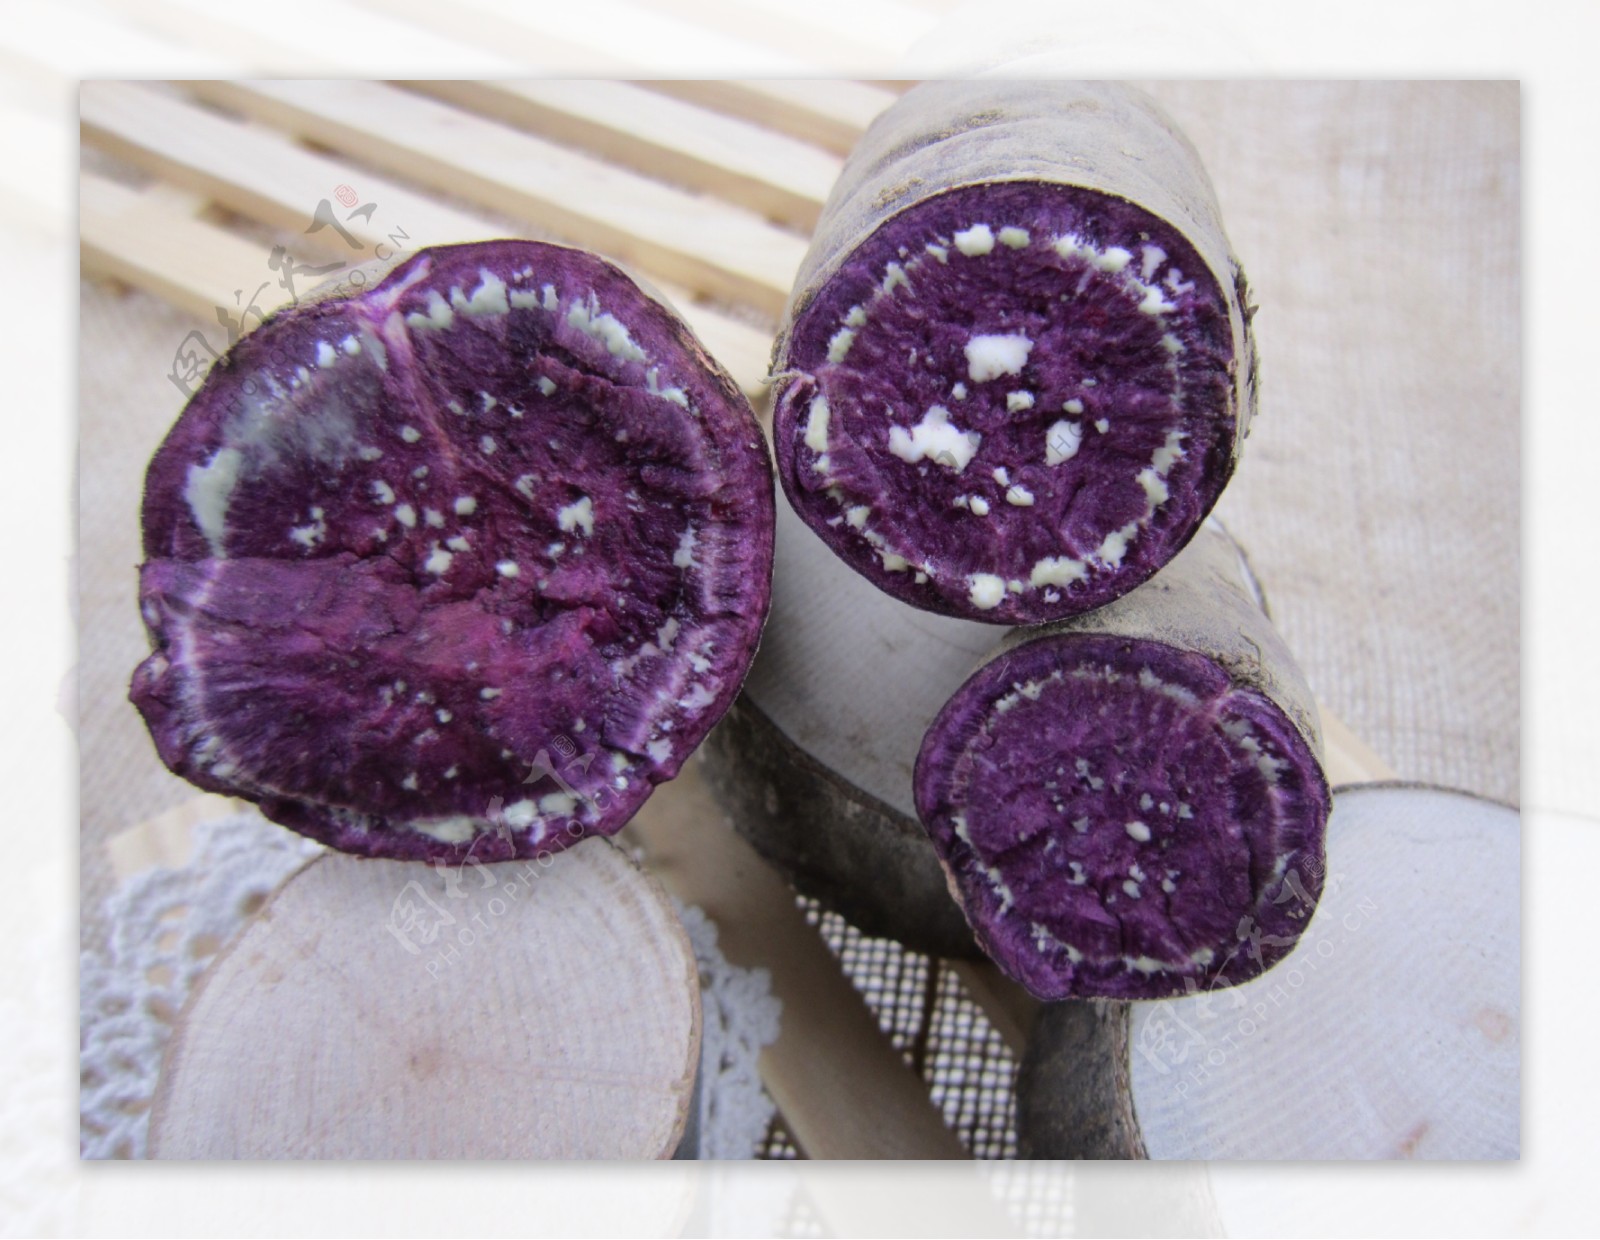 新鲜紫薯图片